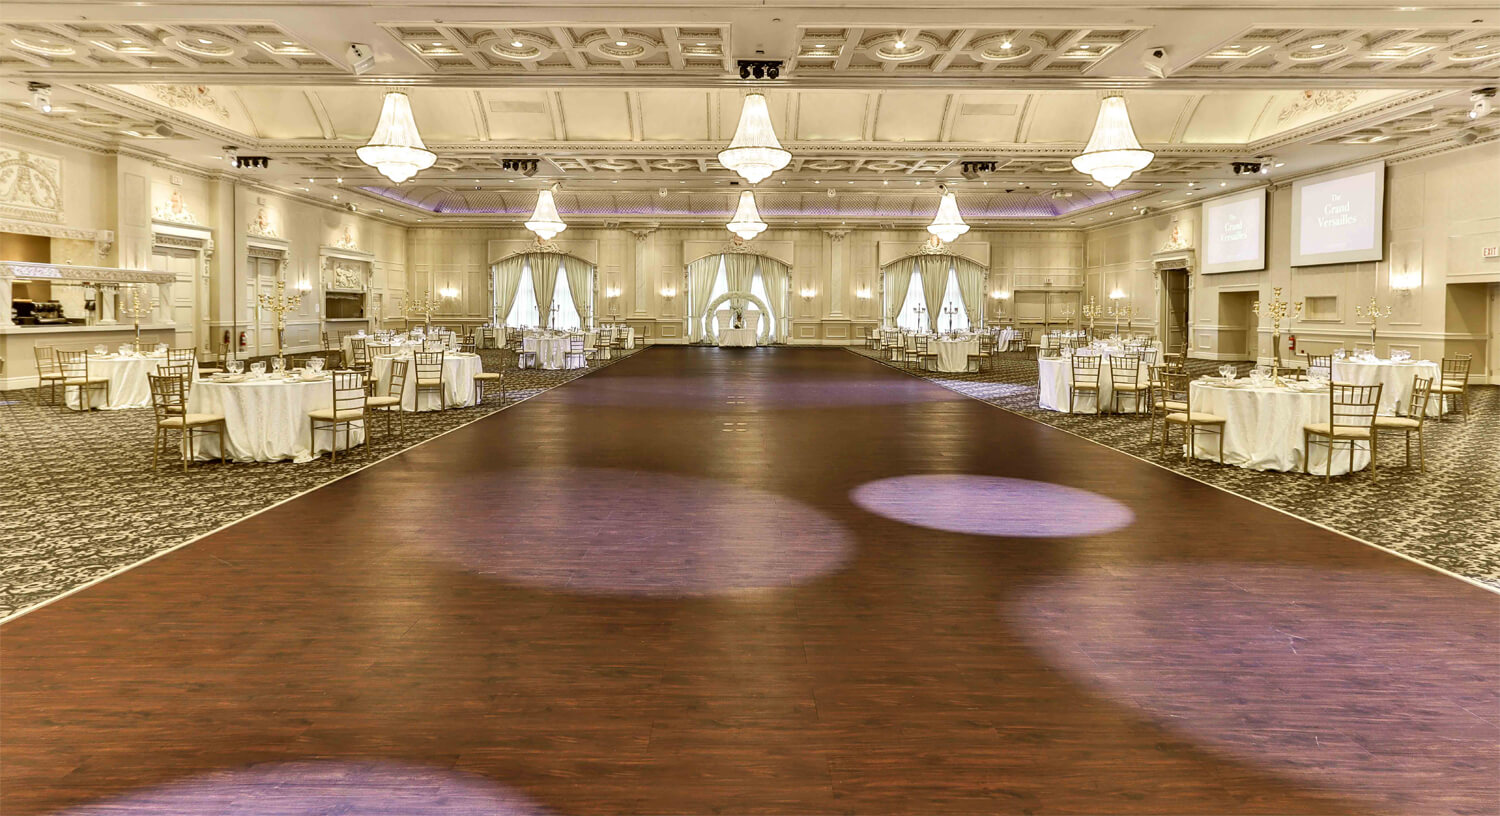 The West Wing (Grand Versailles) Venue dance floor